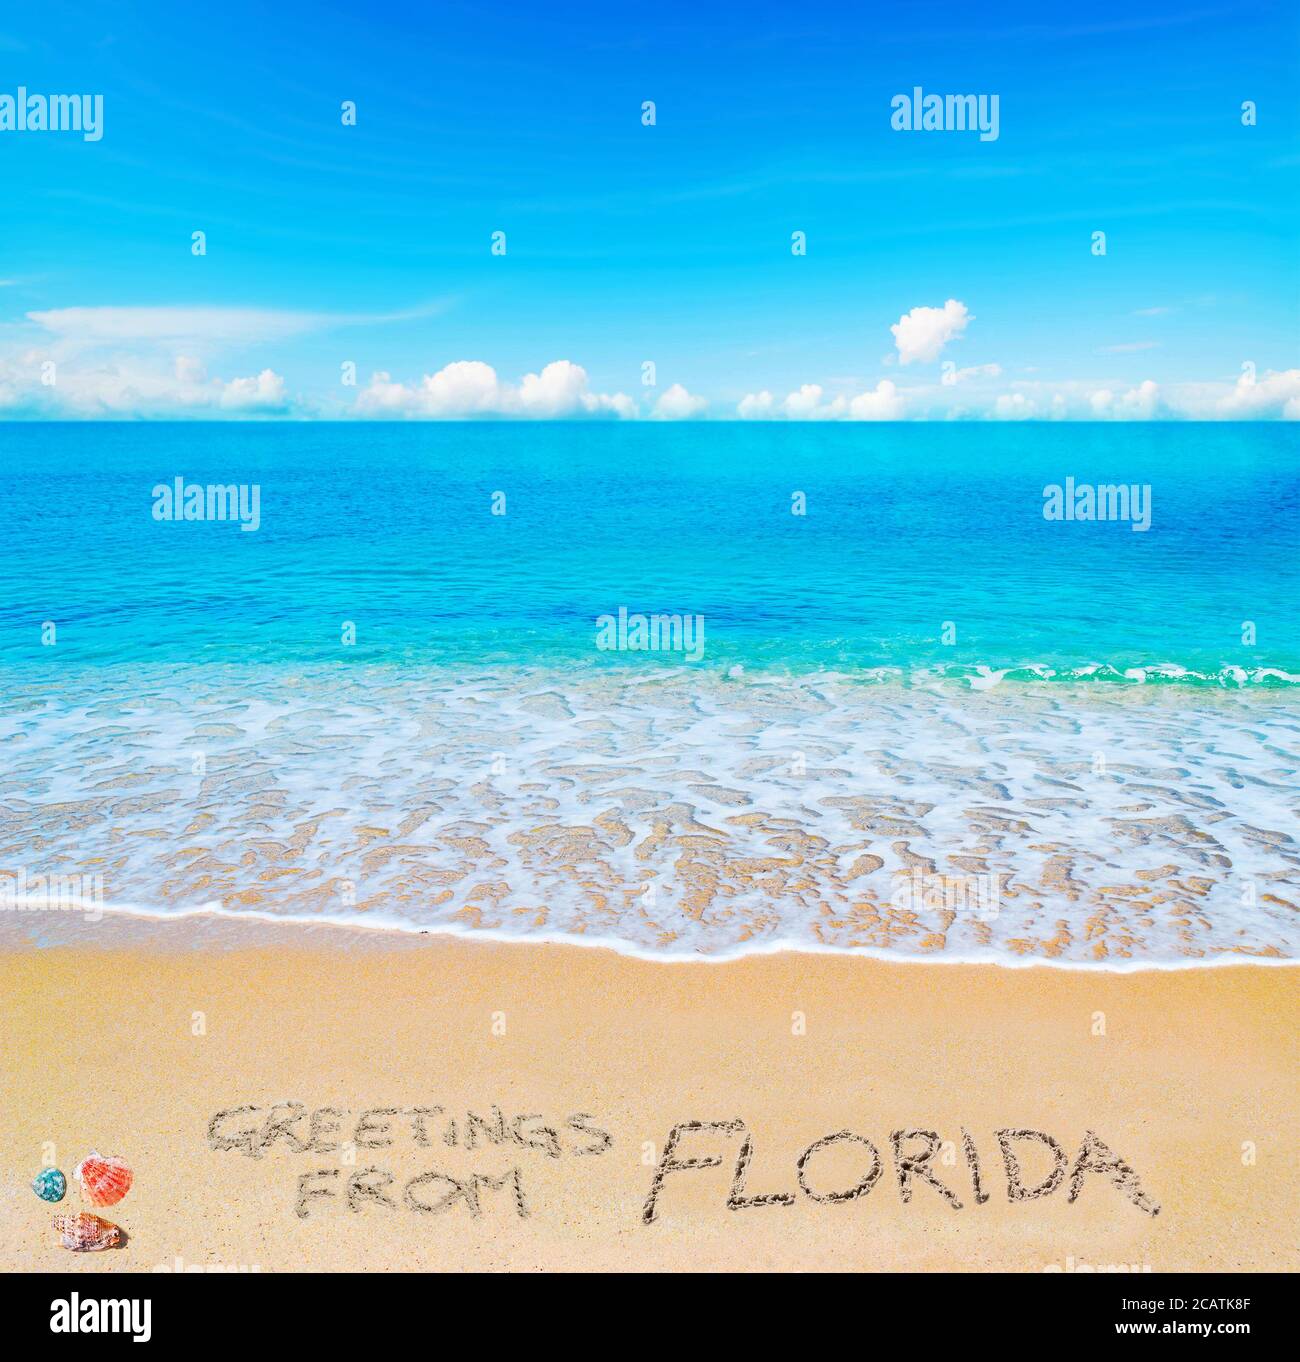 Saluti dalla Florida scritto su una spiaggia tropicale sotto le nuvole Foto Stock